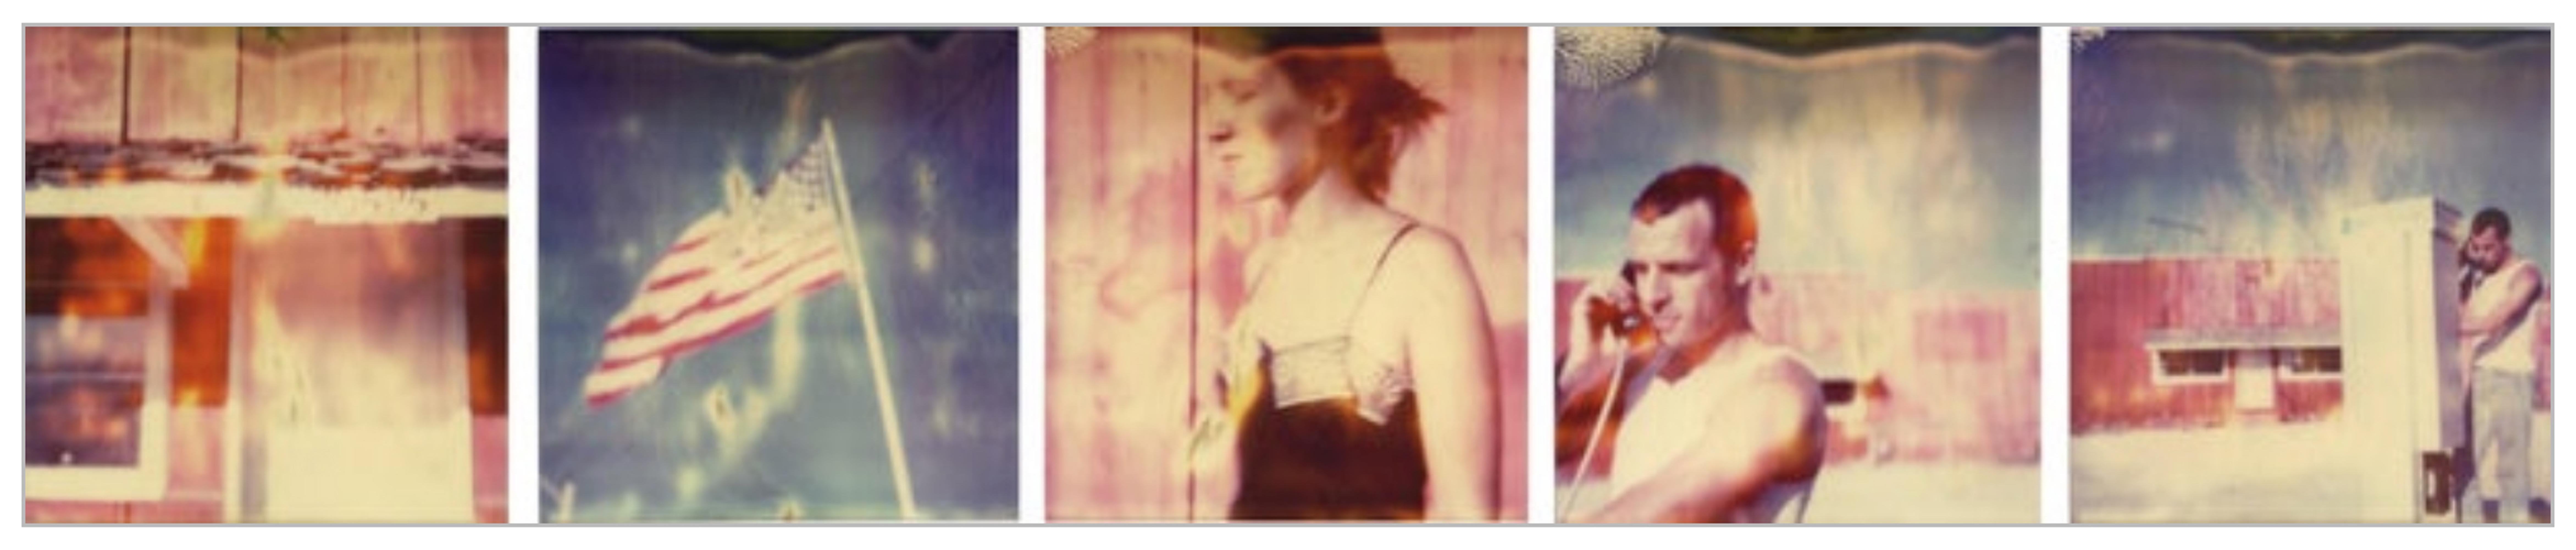 Stefanie Schneider Portrait Photograph - 10525 - Stranger than Paradise, 125x125cm each - Polaroid, 20th Century, Color